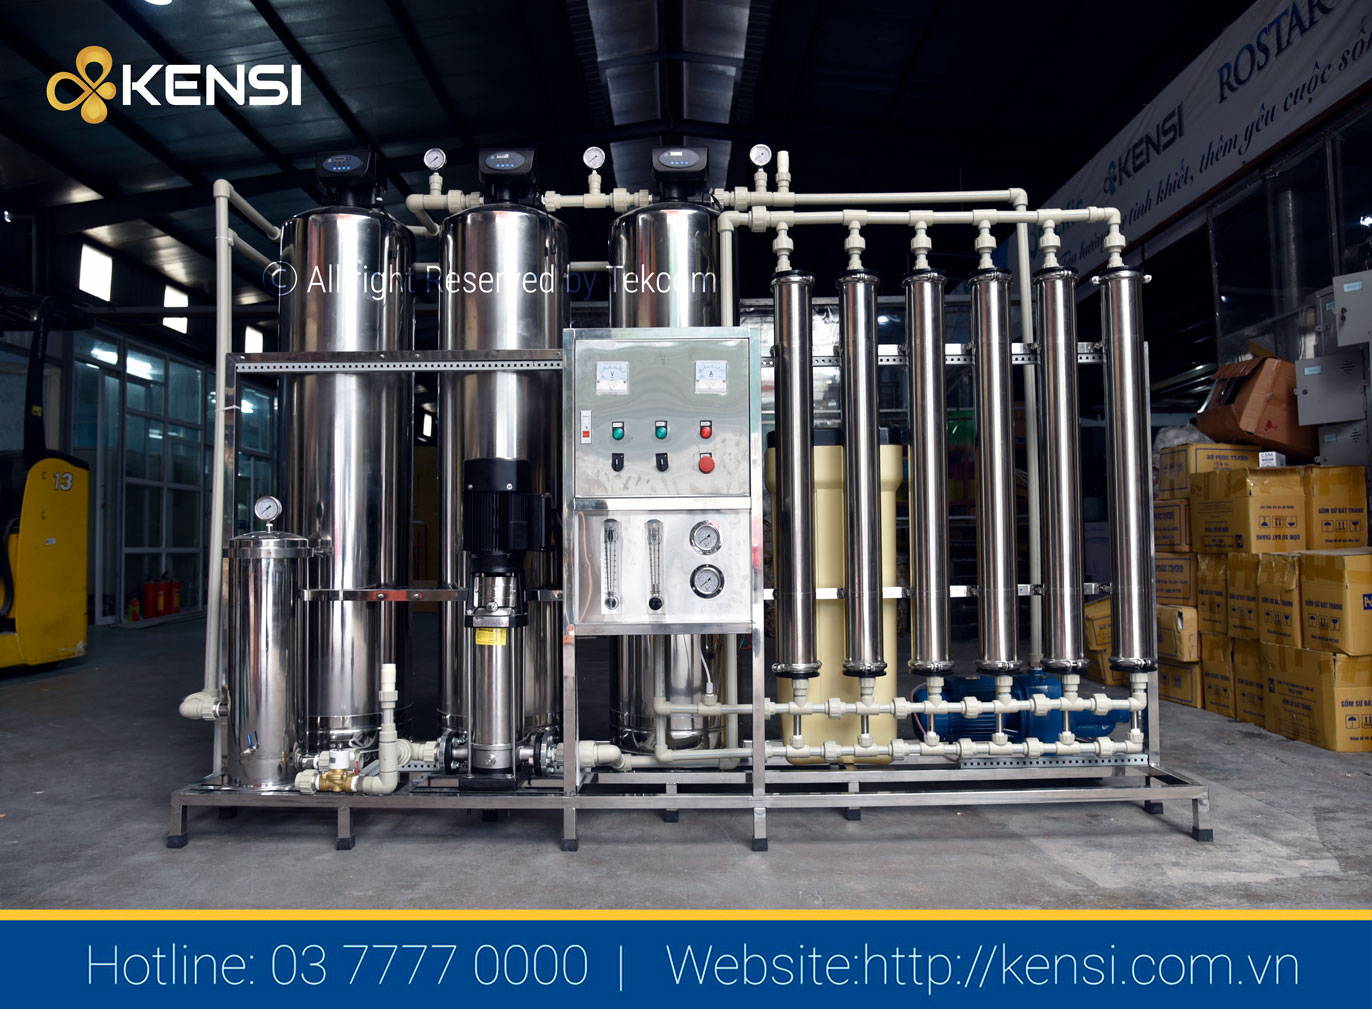 Hệ thống lọc nước xử lý hiệu quả nguồn nước bẩn ô nhiễm tại các xưởng sản suất, chế biến